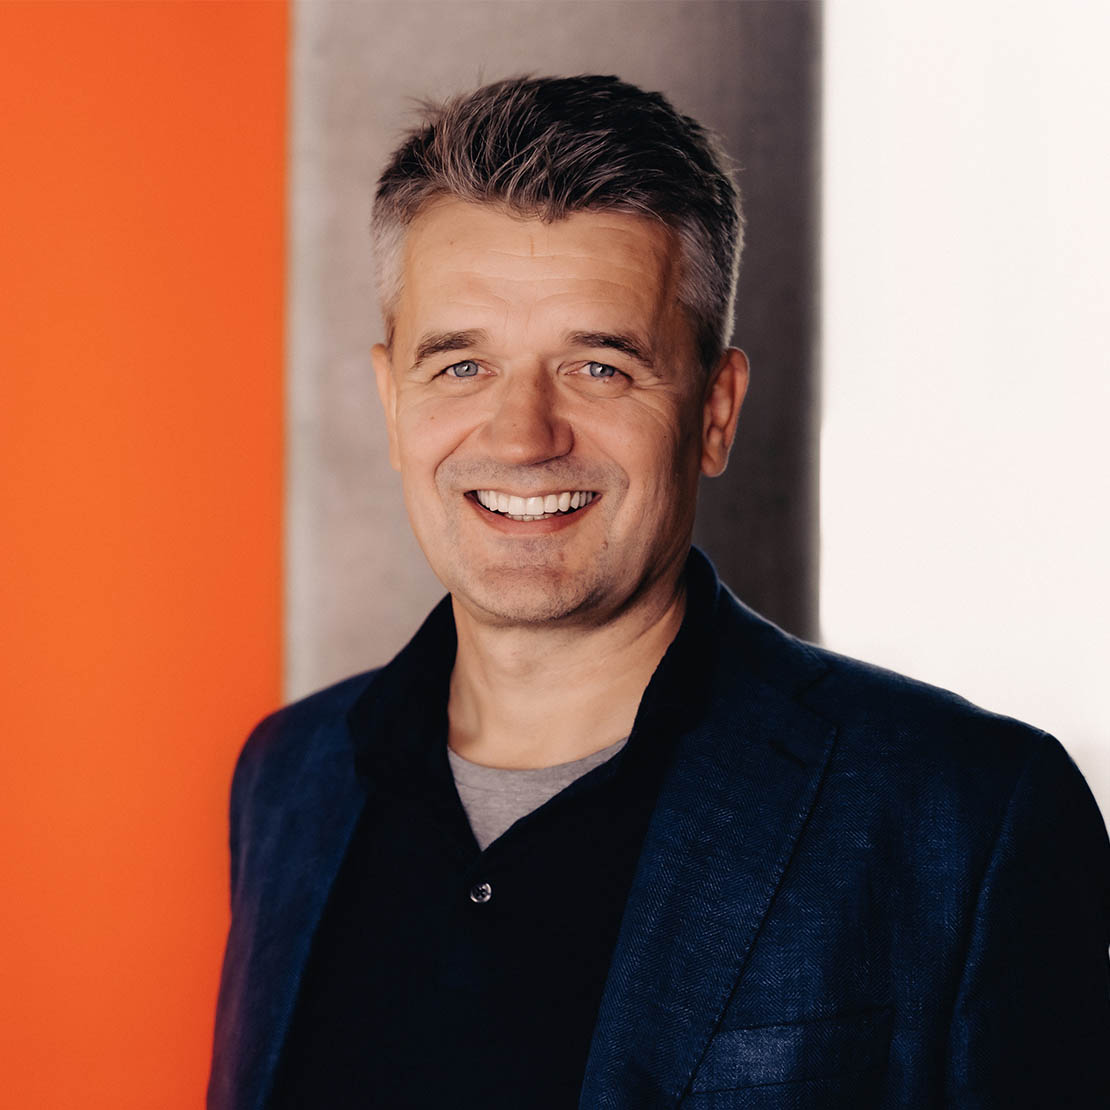 Rune Garborg, new CEO for Vipps MobilePay